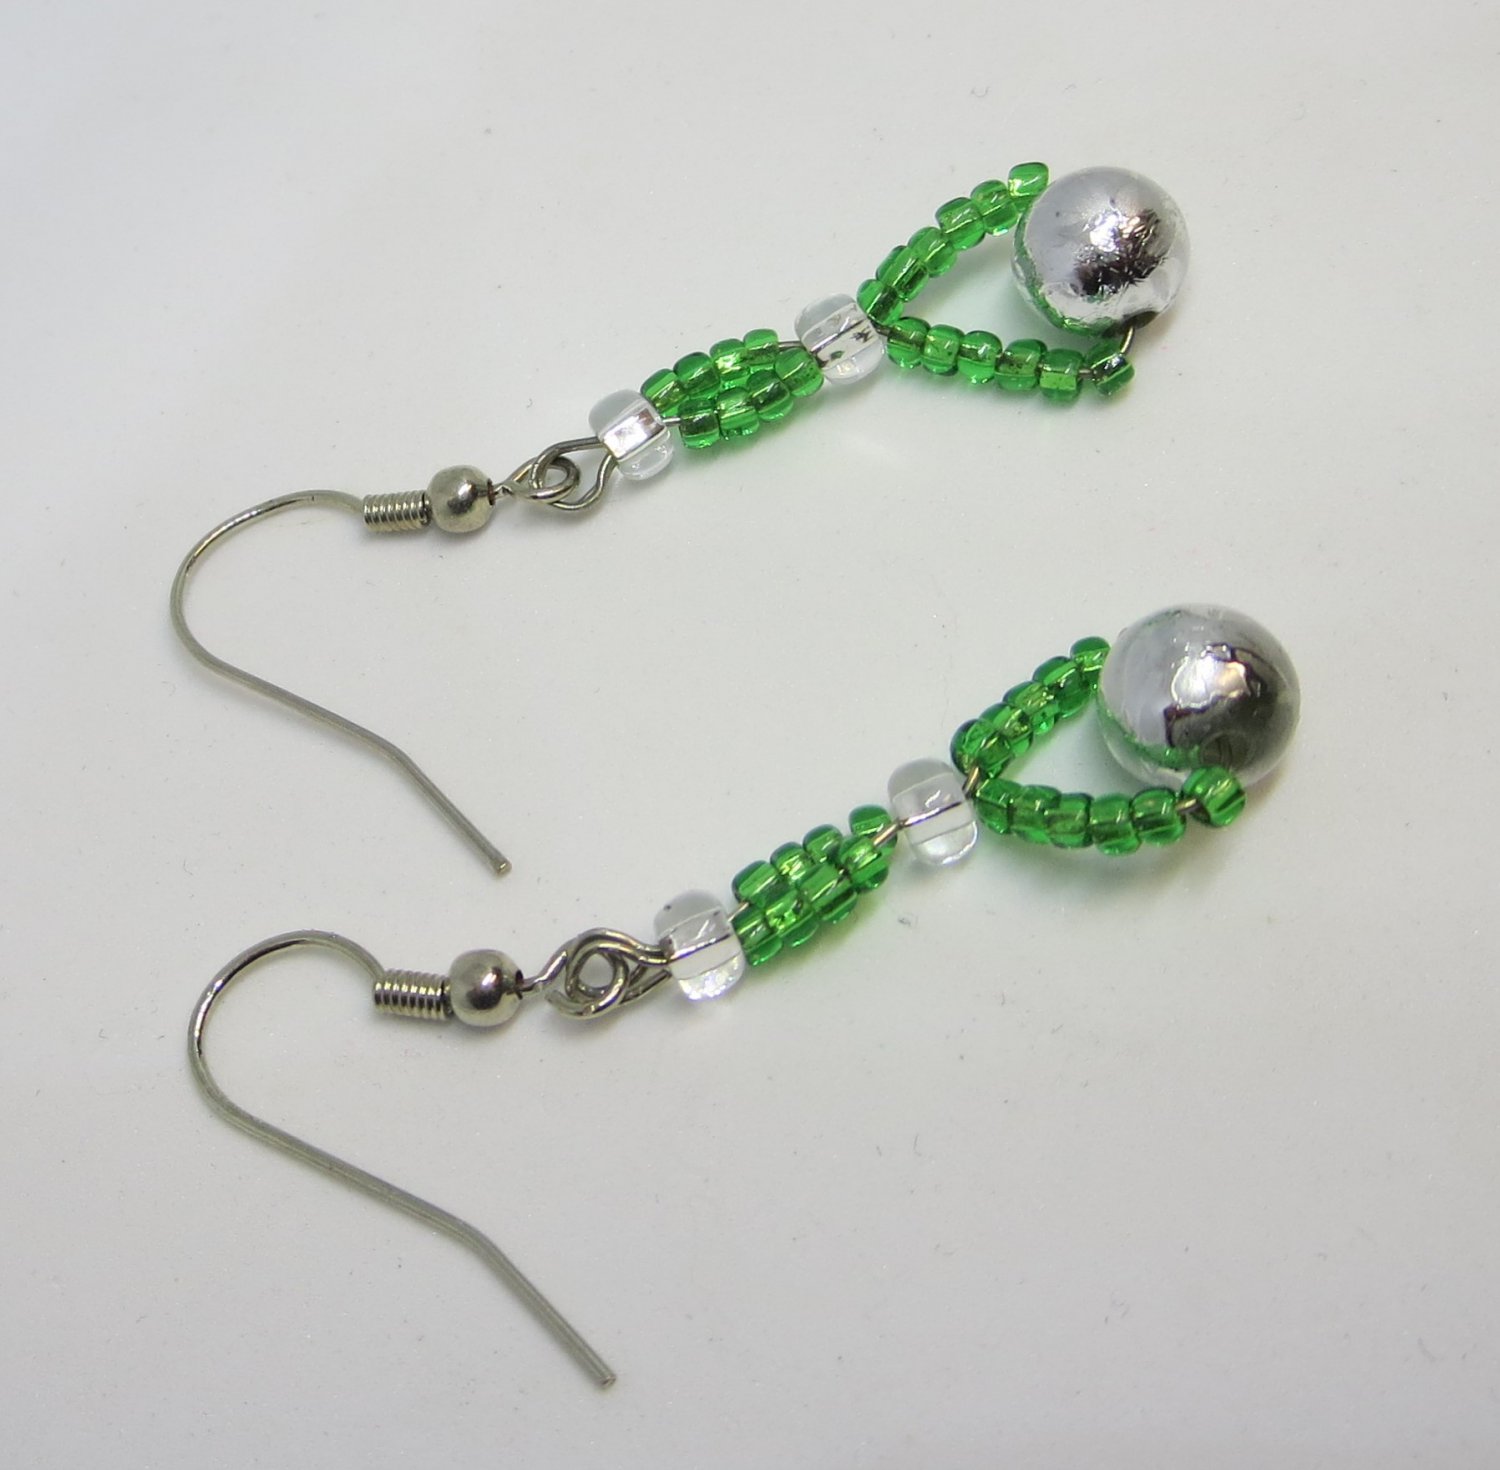 Green beaded earrings, #3613E, drop boutique earrings, Lucine Designs